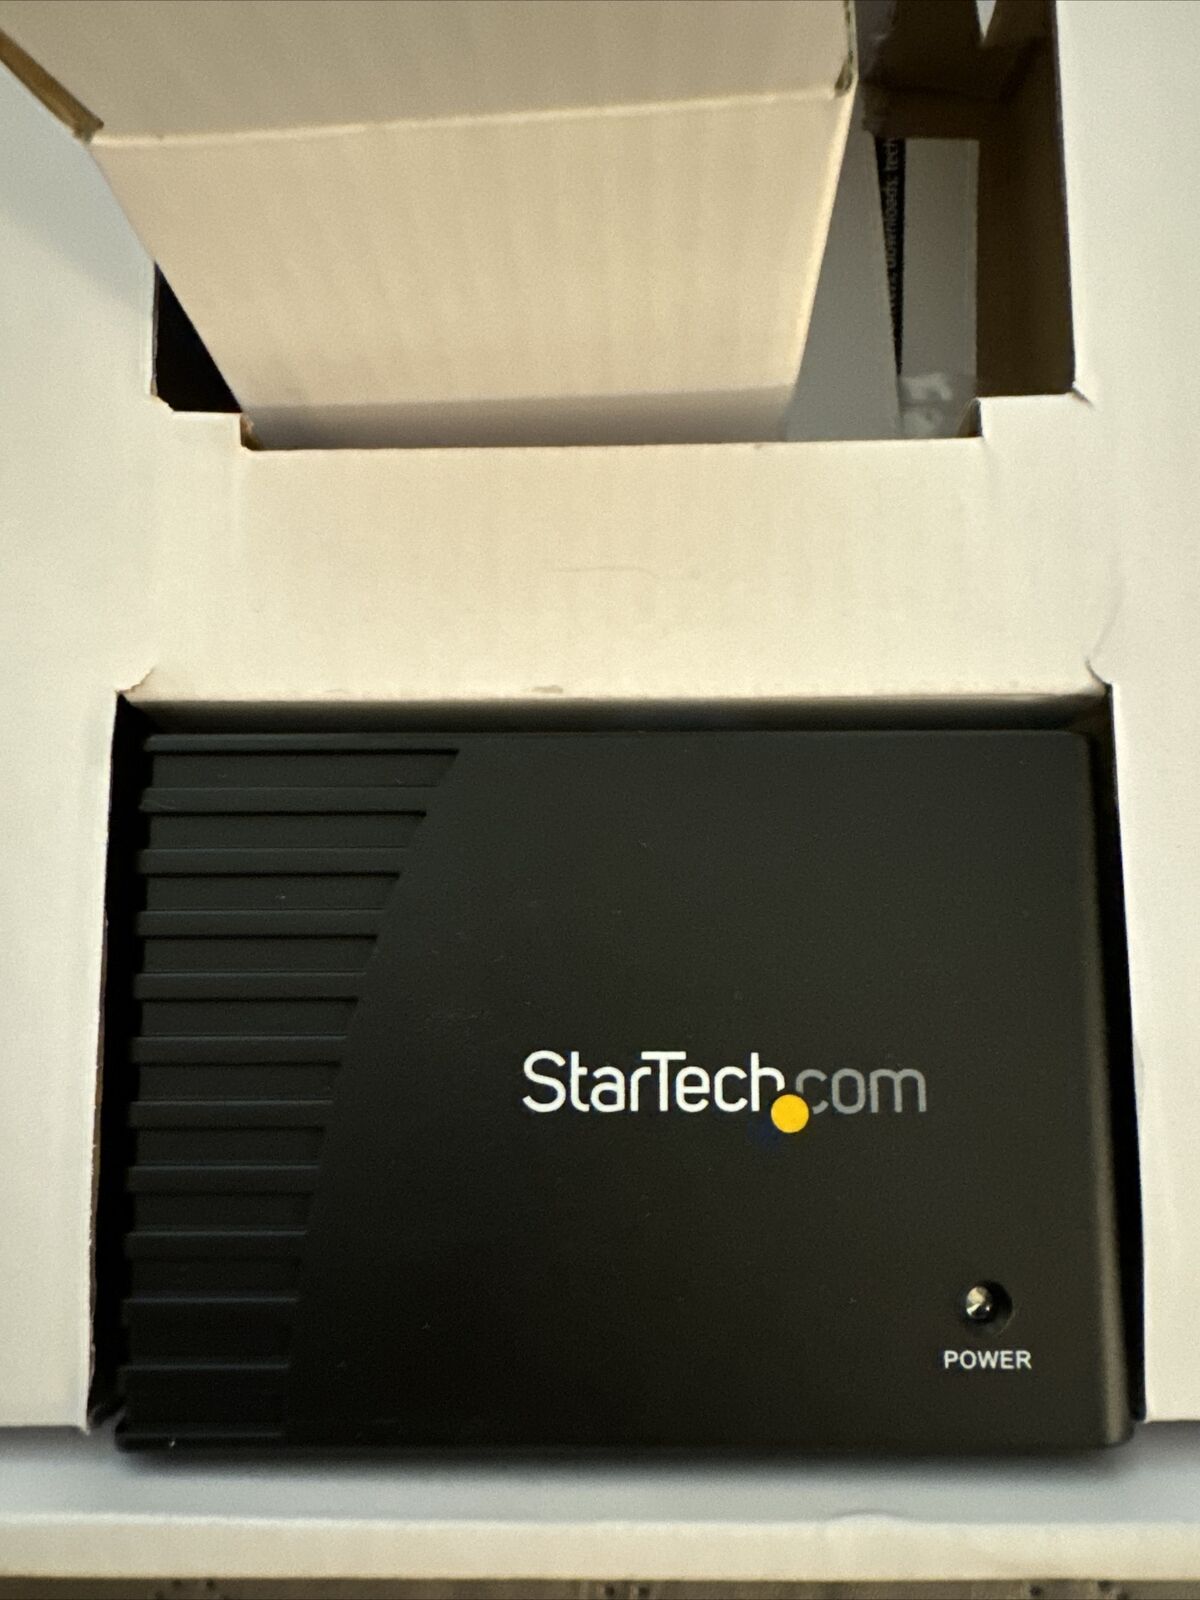 New StarTech.com 4 Port SuperSpeed USB 3.0 Hub ST4300USB3 (OB)